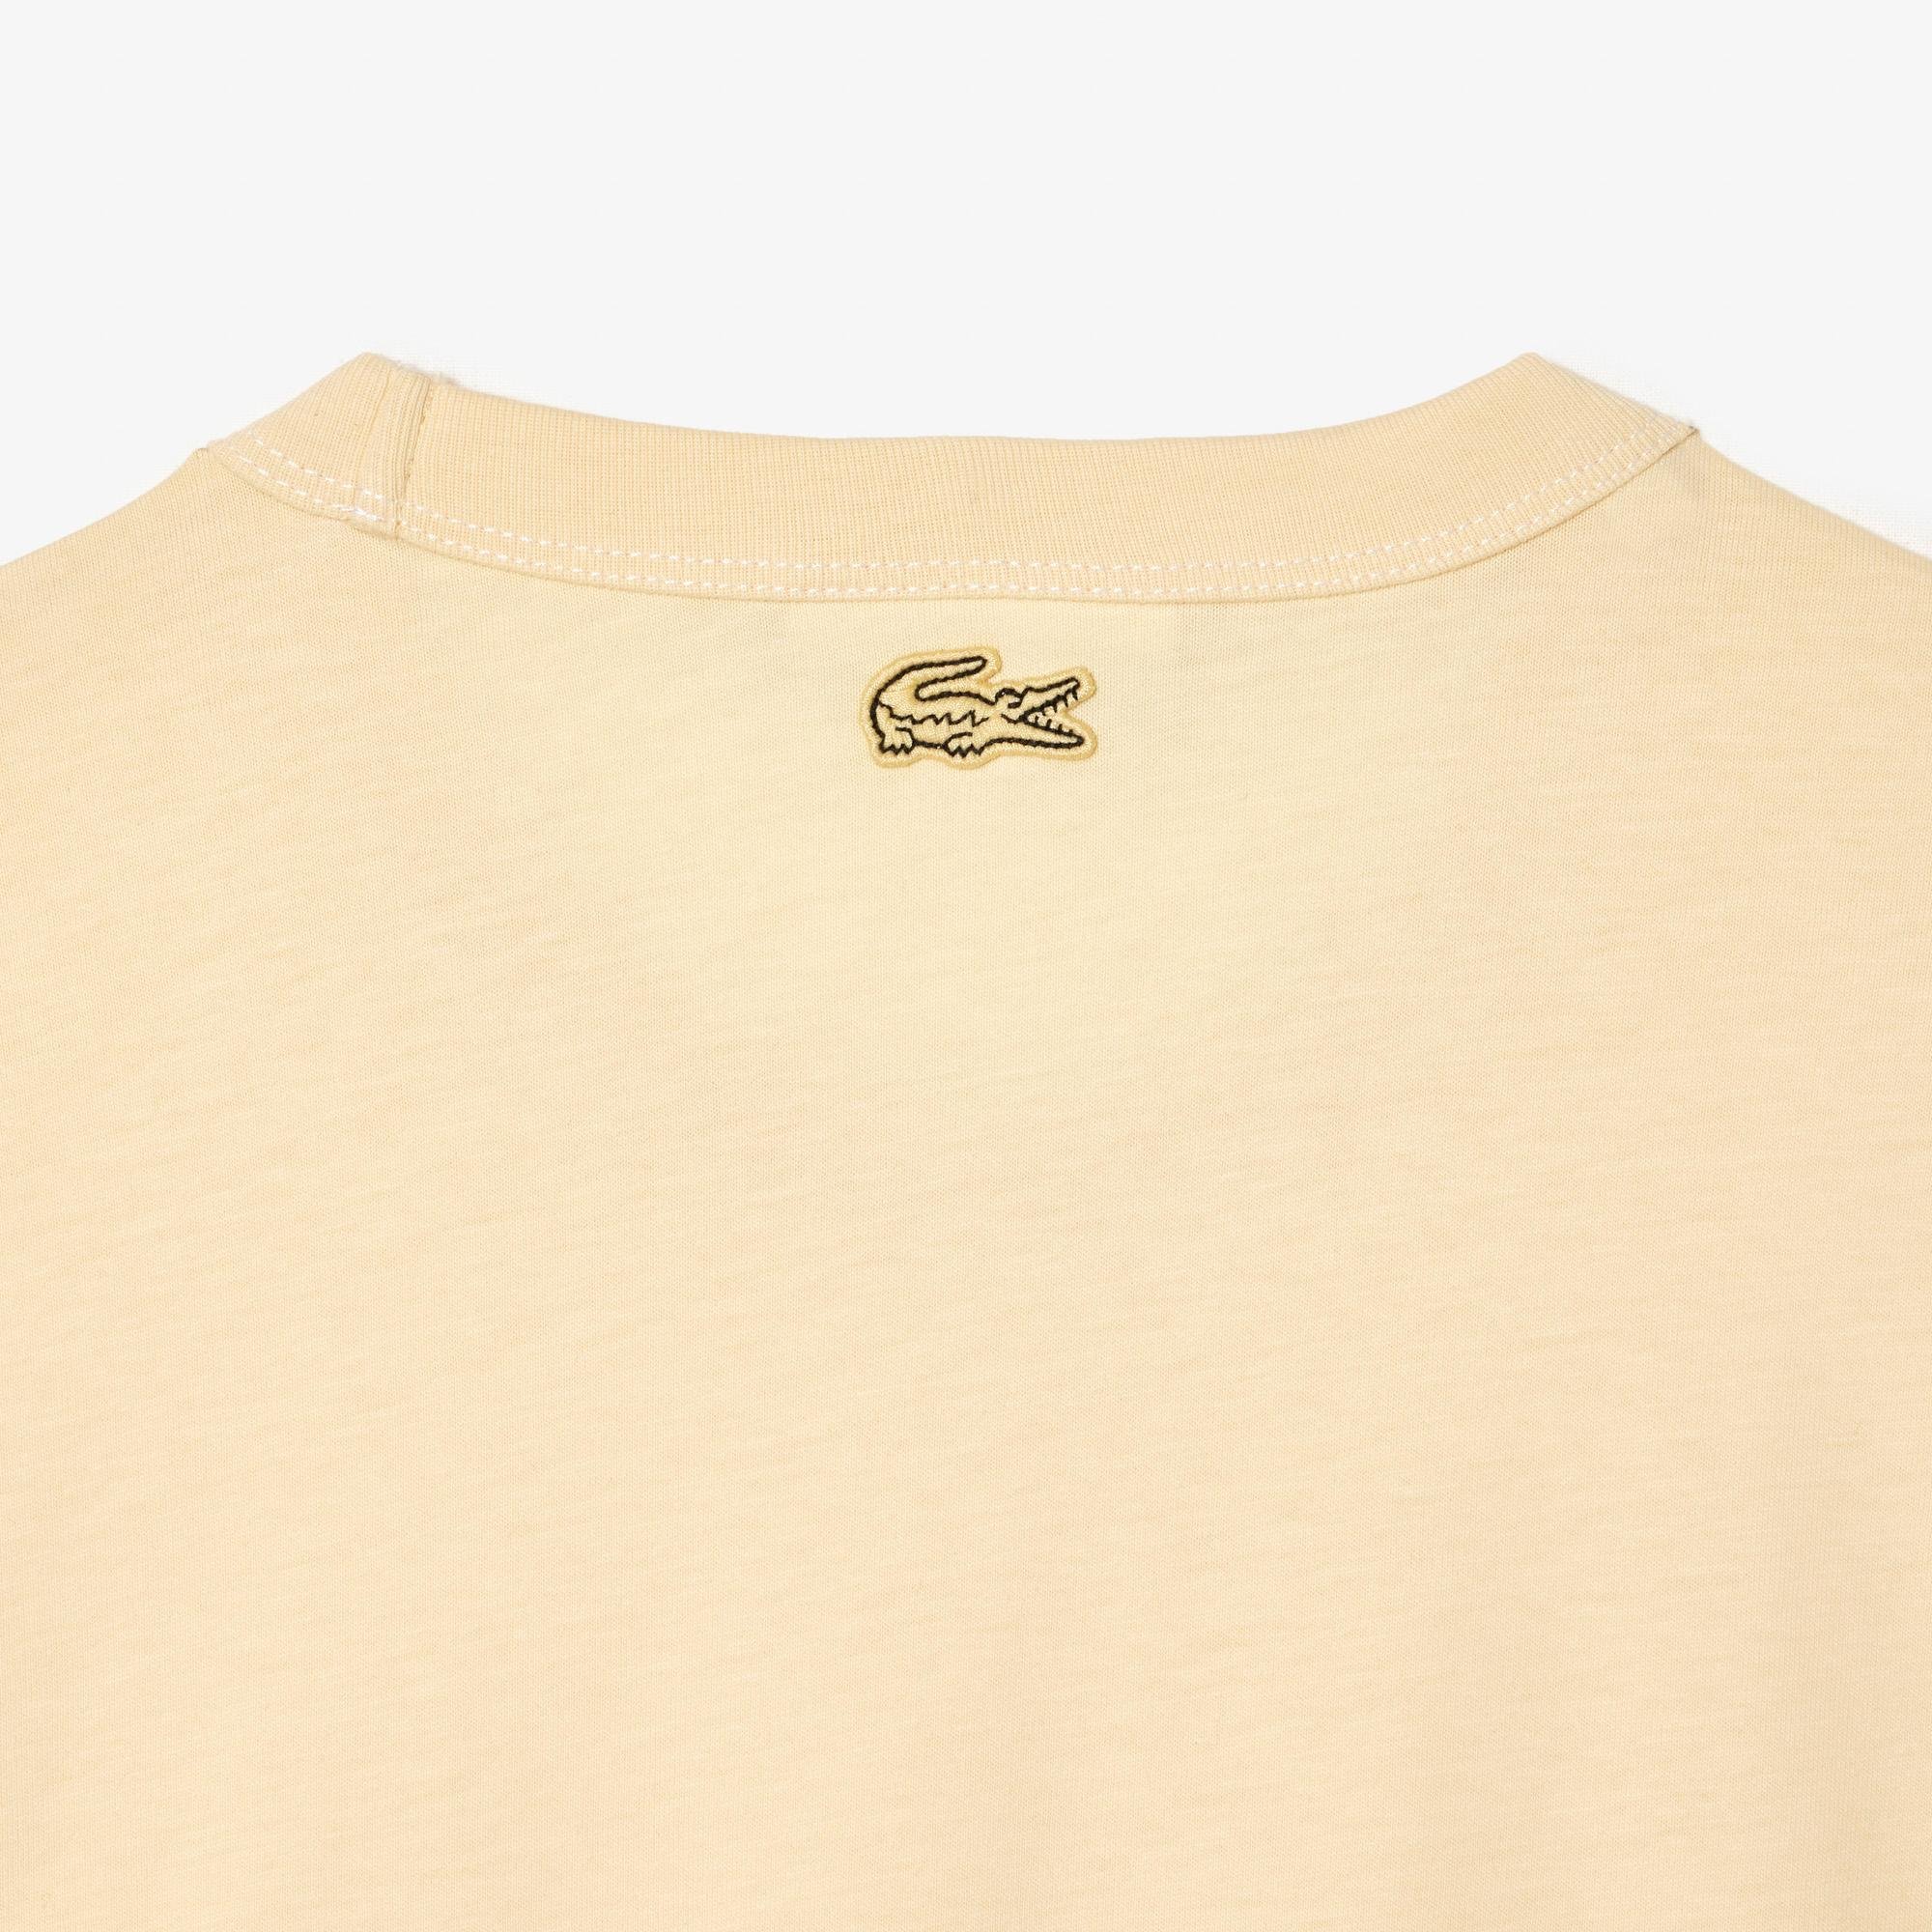 Lacoste damski T-shirt z dżerseju z bawełny organicznej Slim Fit